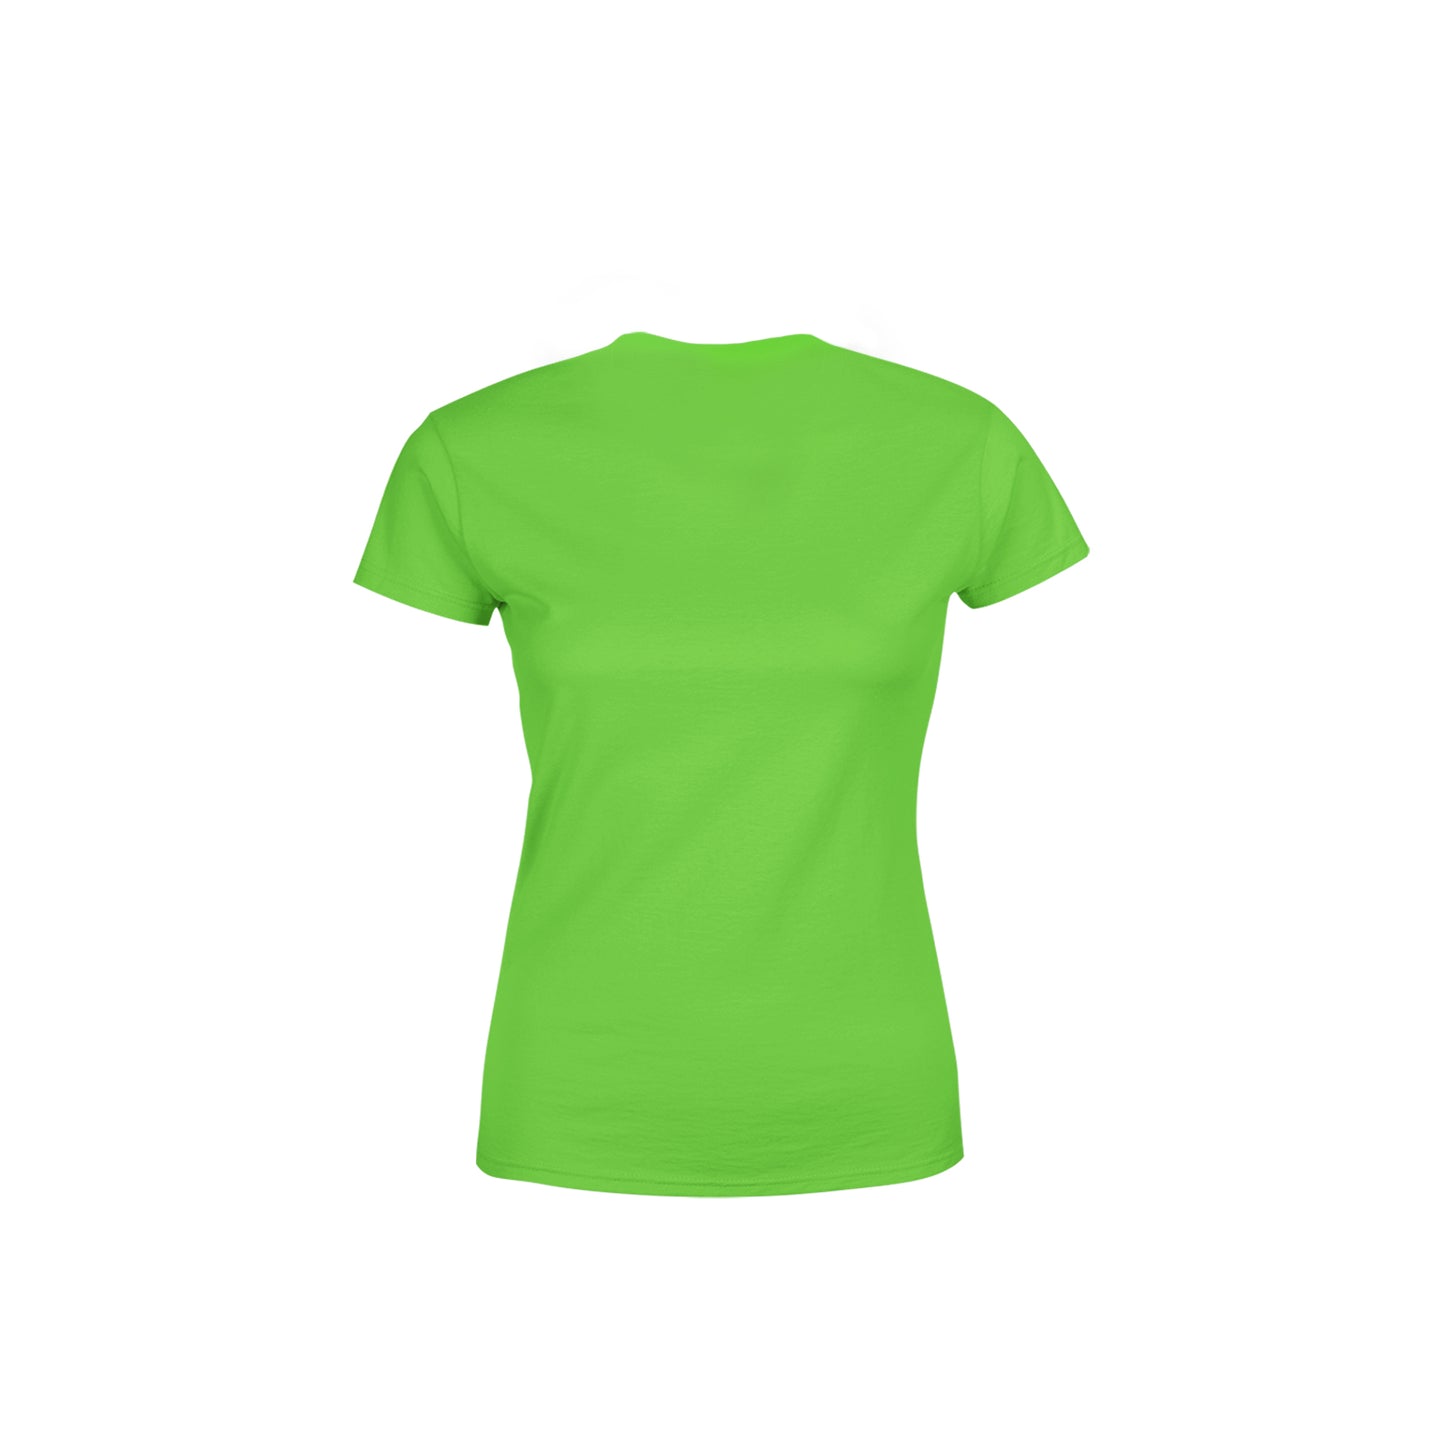 40 Number Women's T-Shirt (Liril Green)